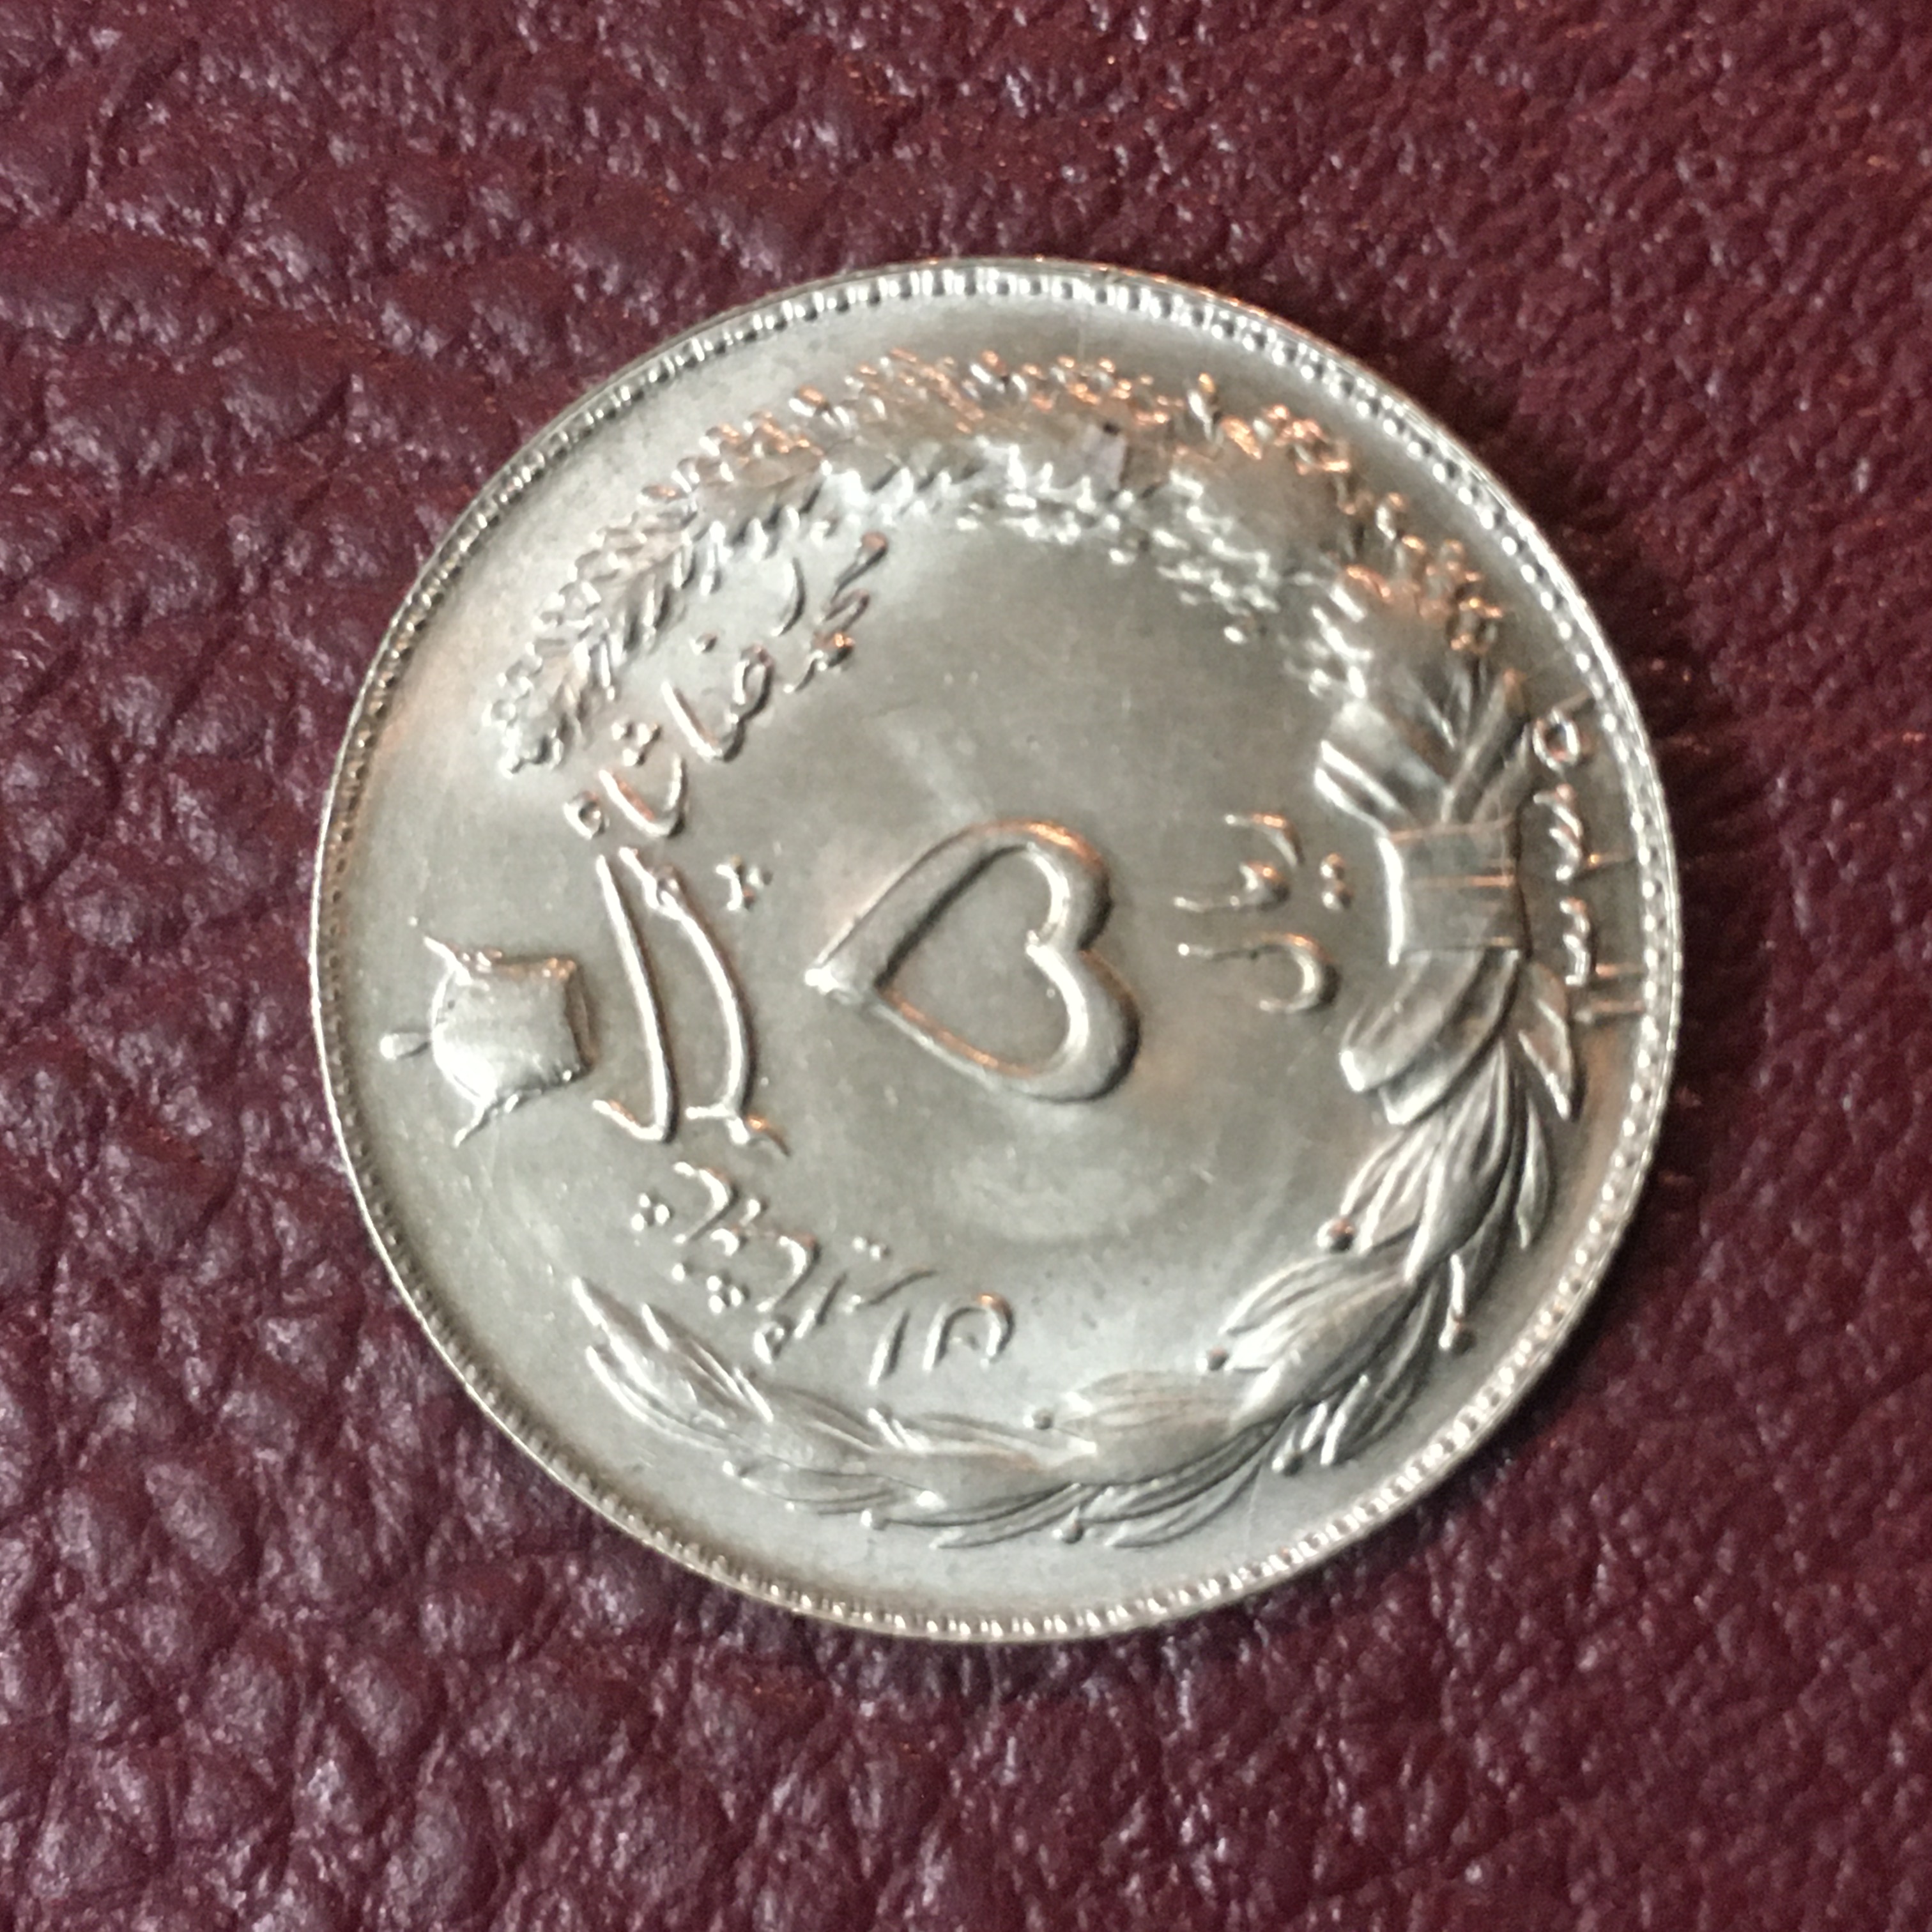 سکه ۵ ریال دوتاج ١٣٣٩ بسیار کمیاب و ارزشمند سوپر بانکی